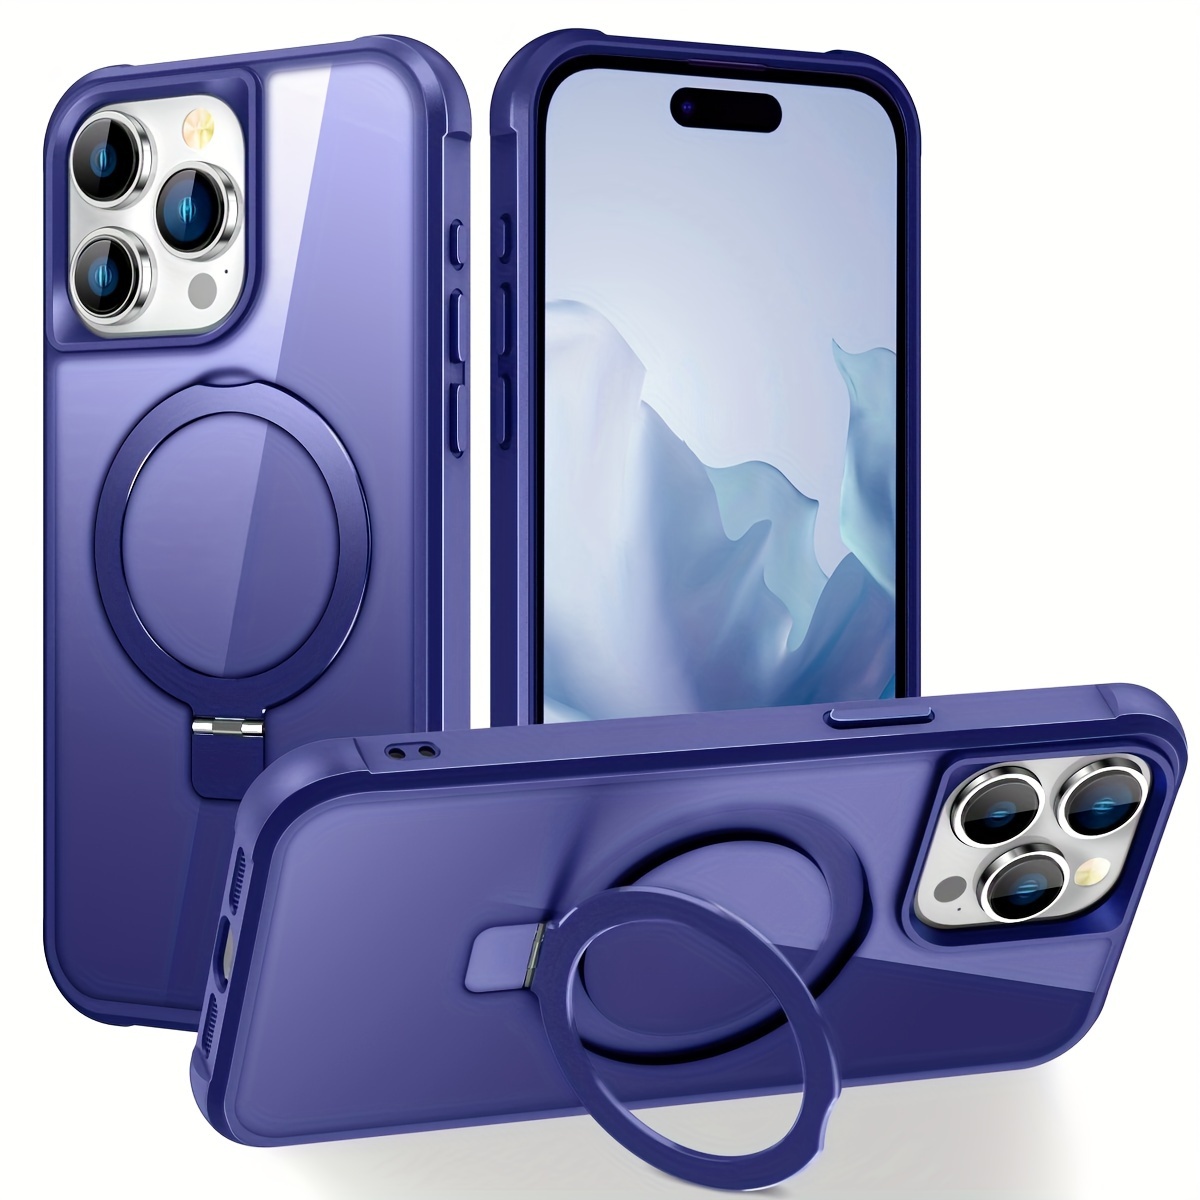  Funda magnética compatible con iPhone 12 Mini con purpurina,  compatible con MagSafe Charger para mujeres y niñas, funda protectora de  cuerpo completo a prueba de golpes para iPhone 12 mini de